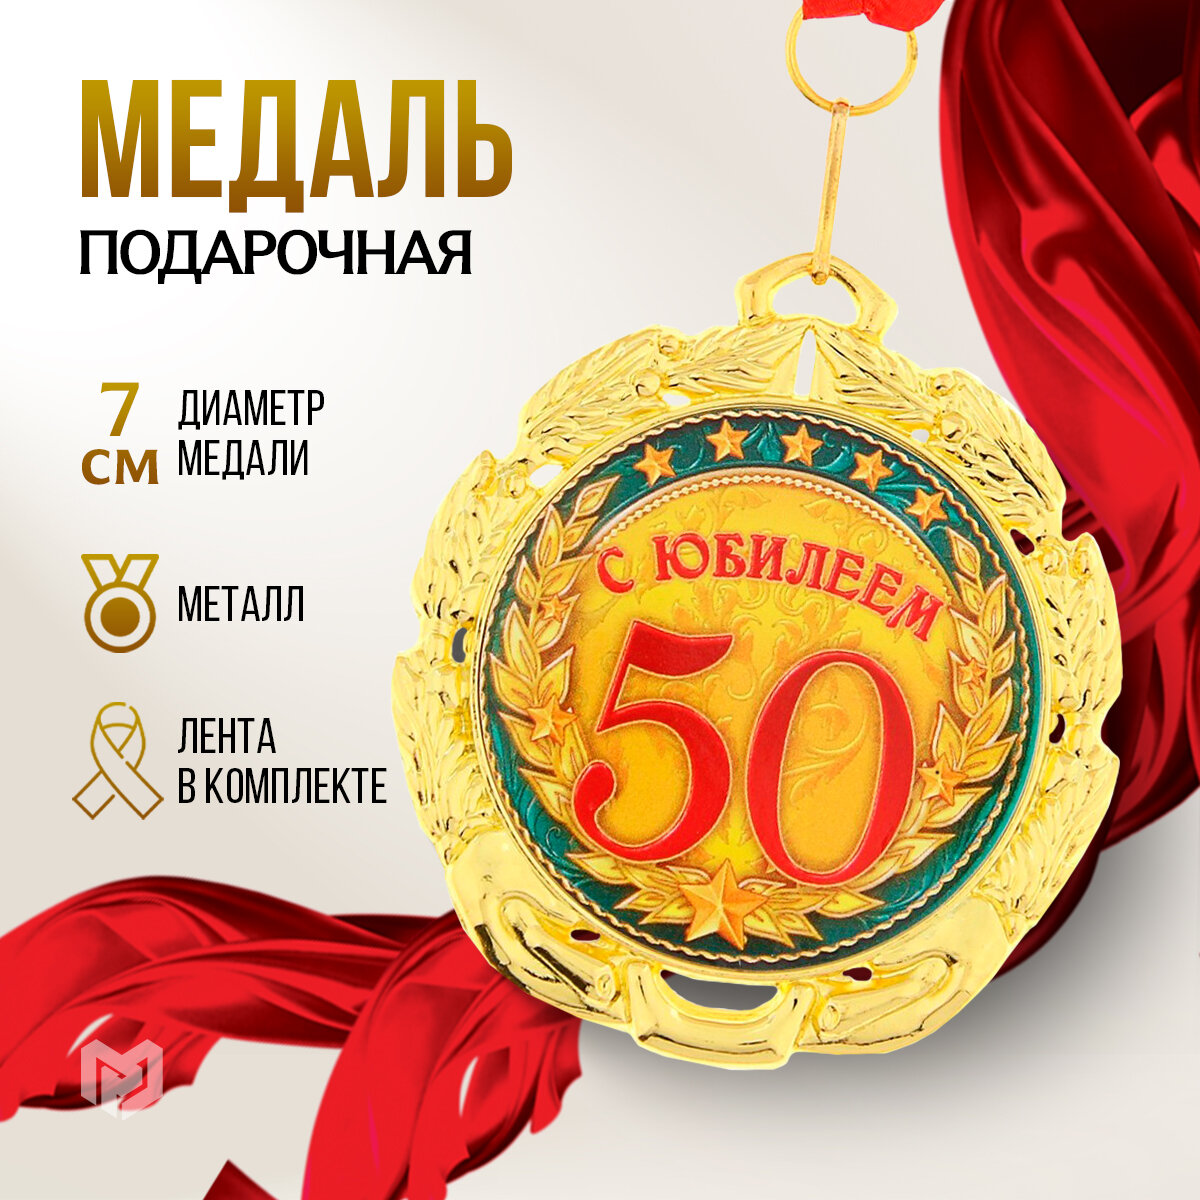 Медаль подарочная "С юбилеем 50 лет", диаметр 7 см